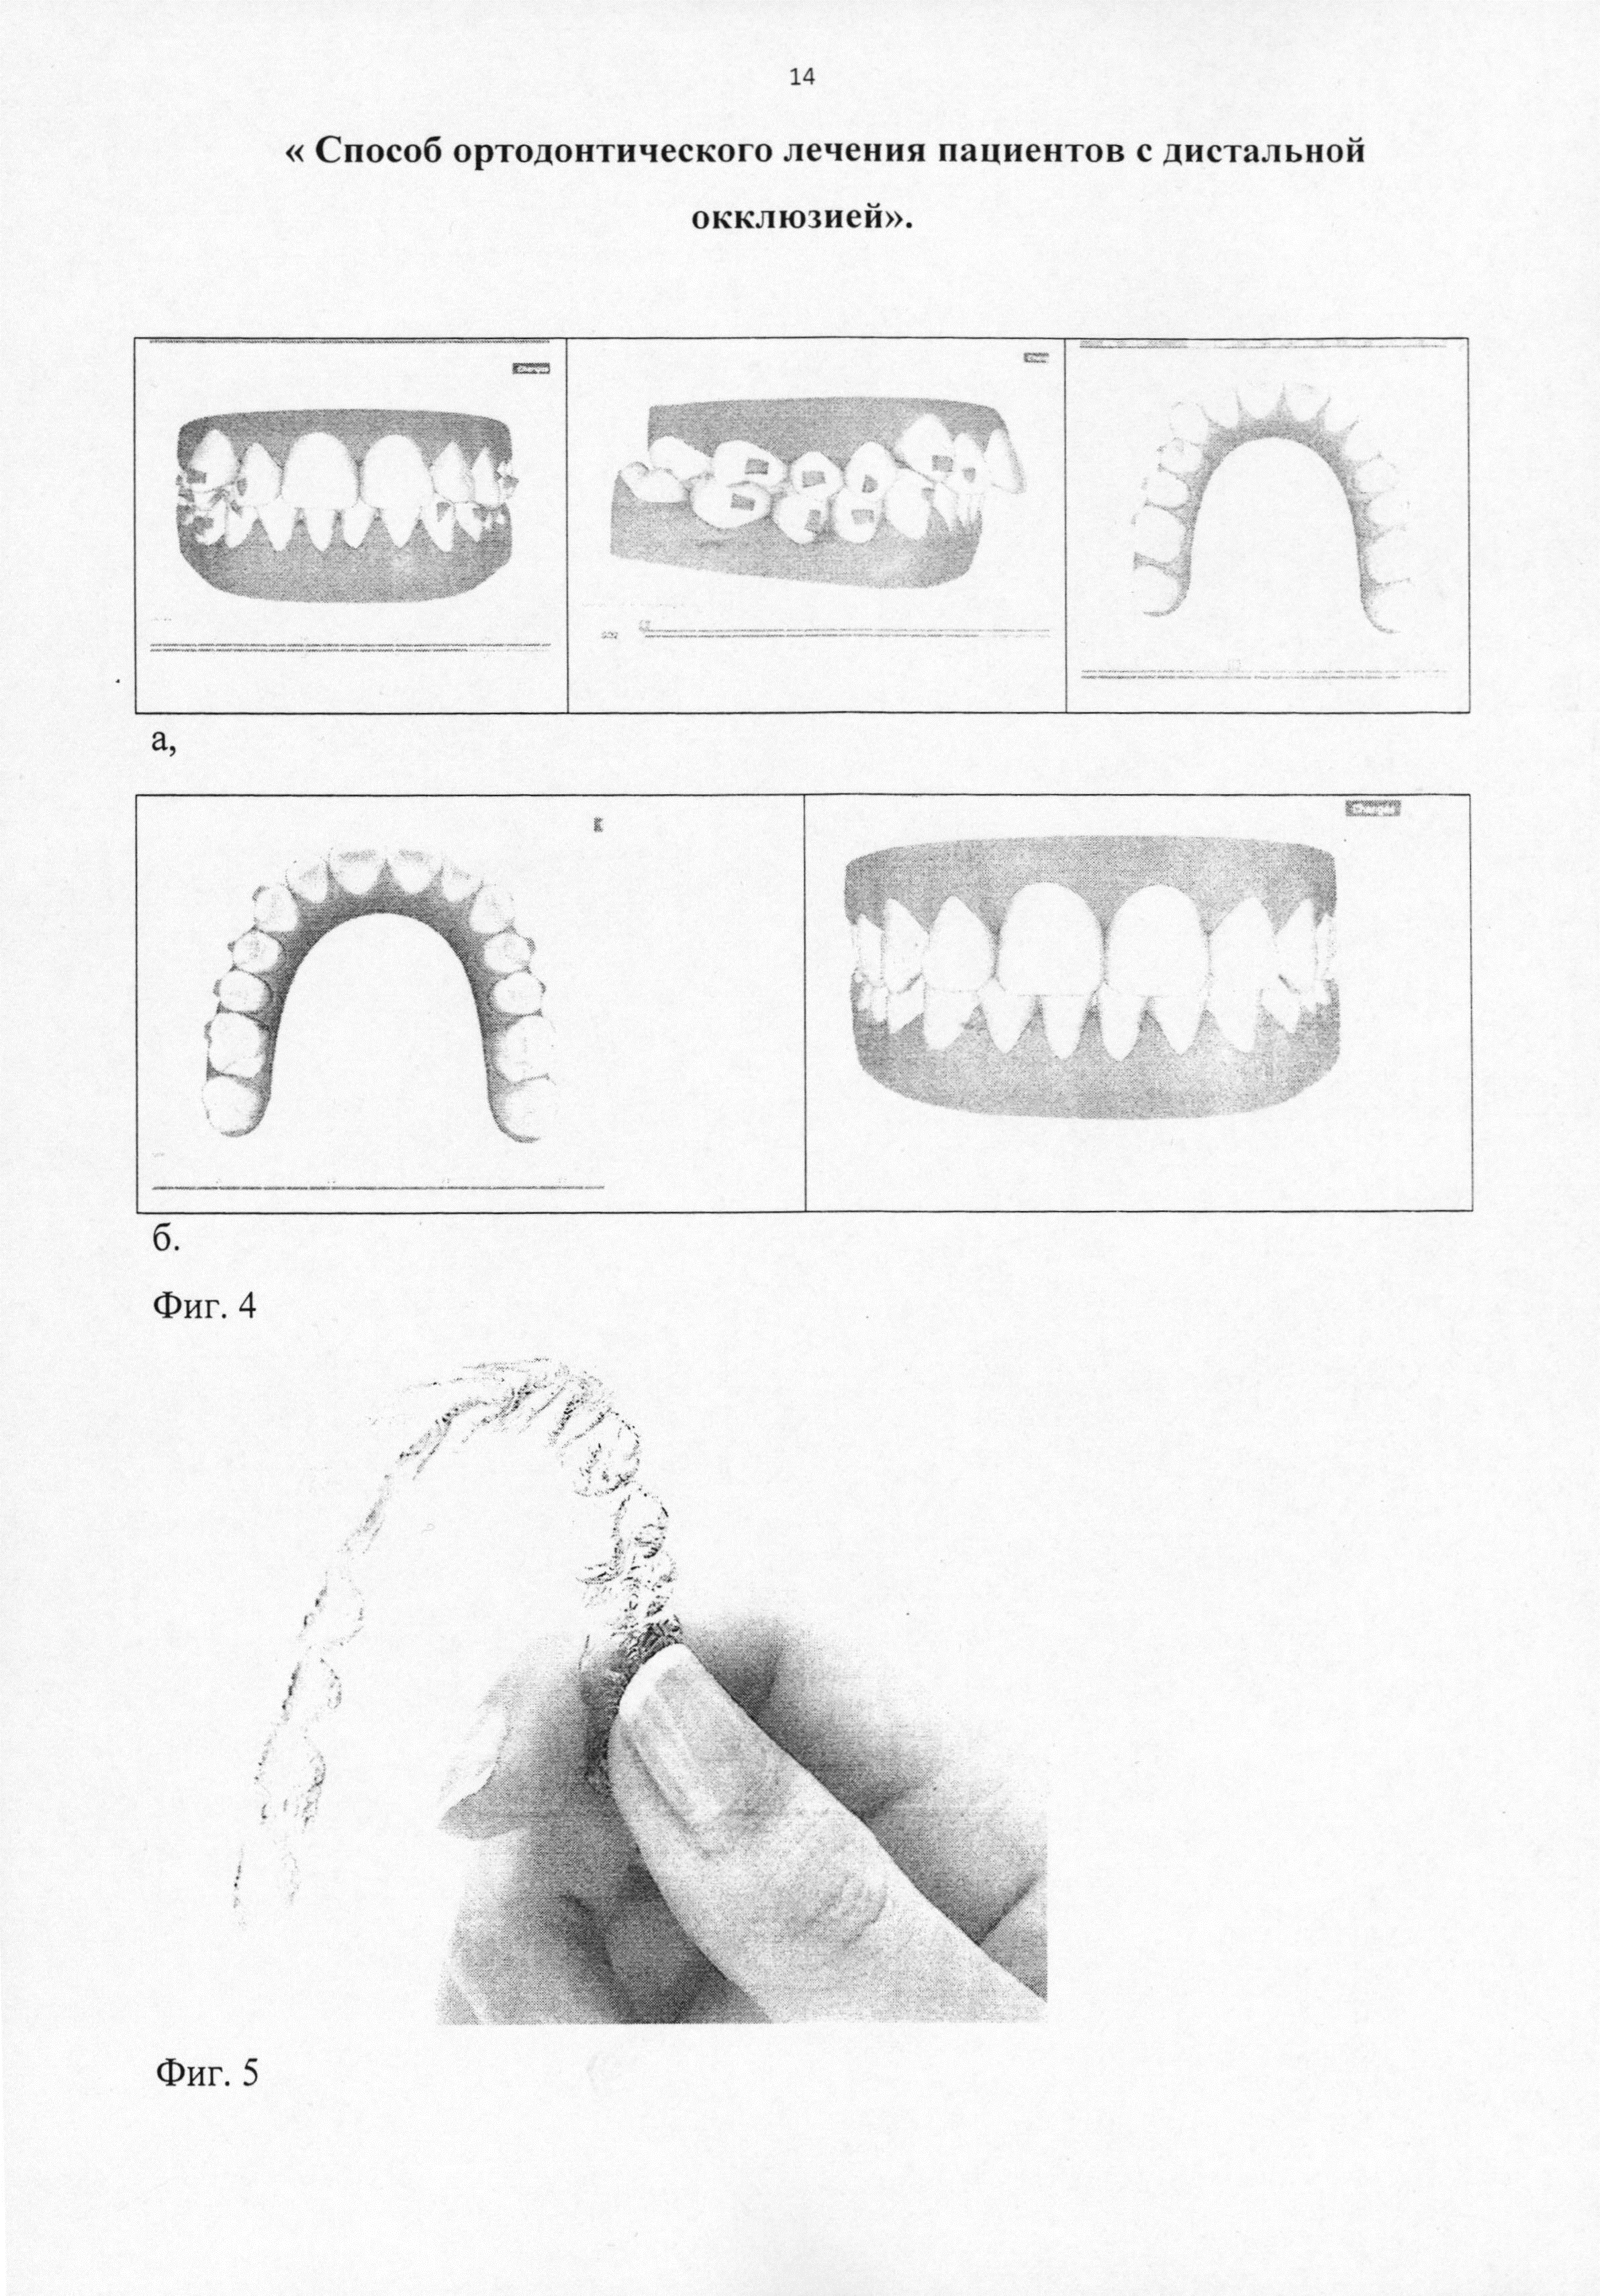 Способ ортодонтического лечения пациентов с дистальной окклюзией